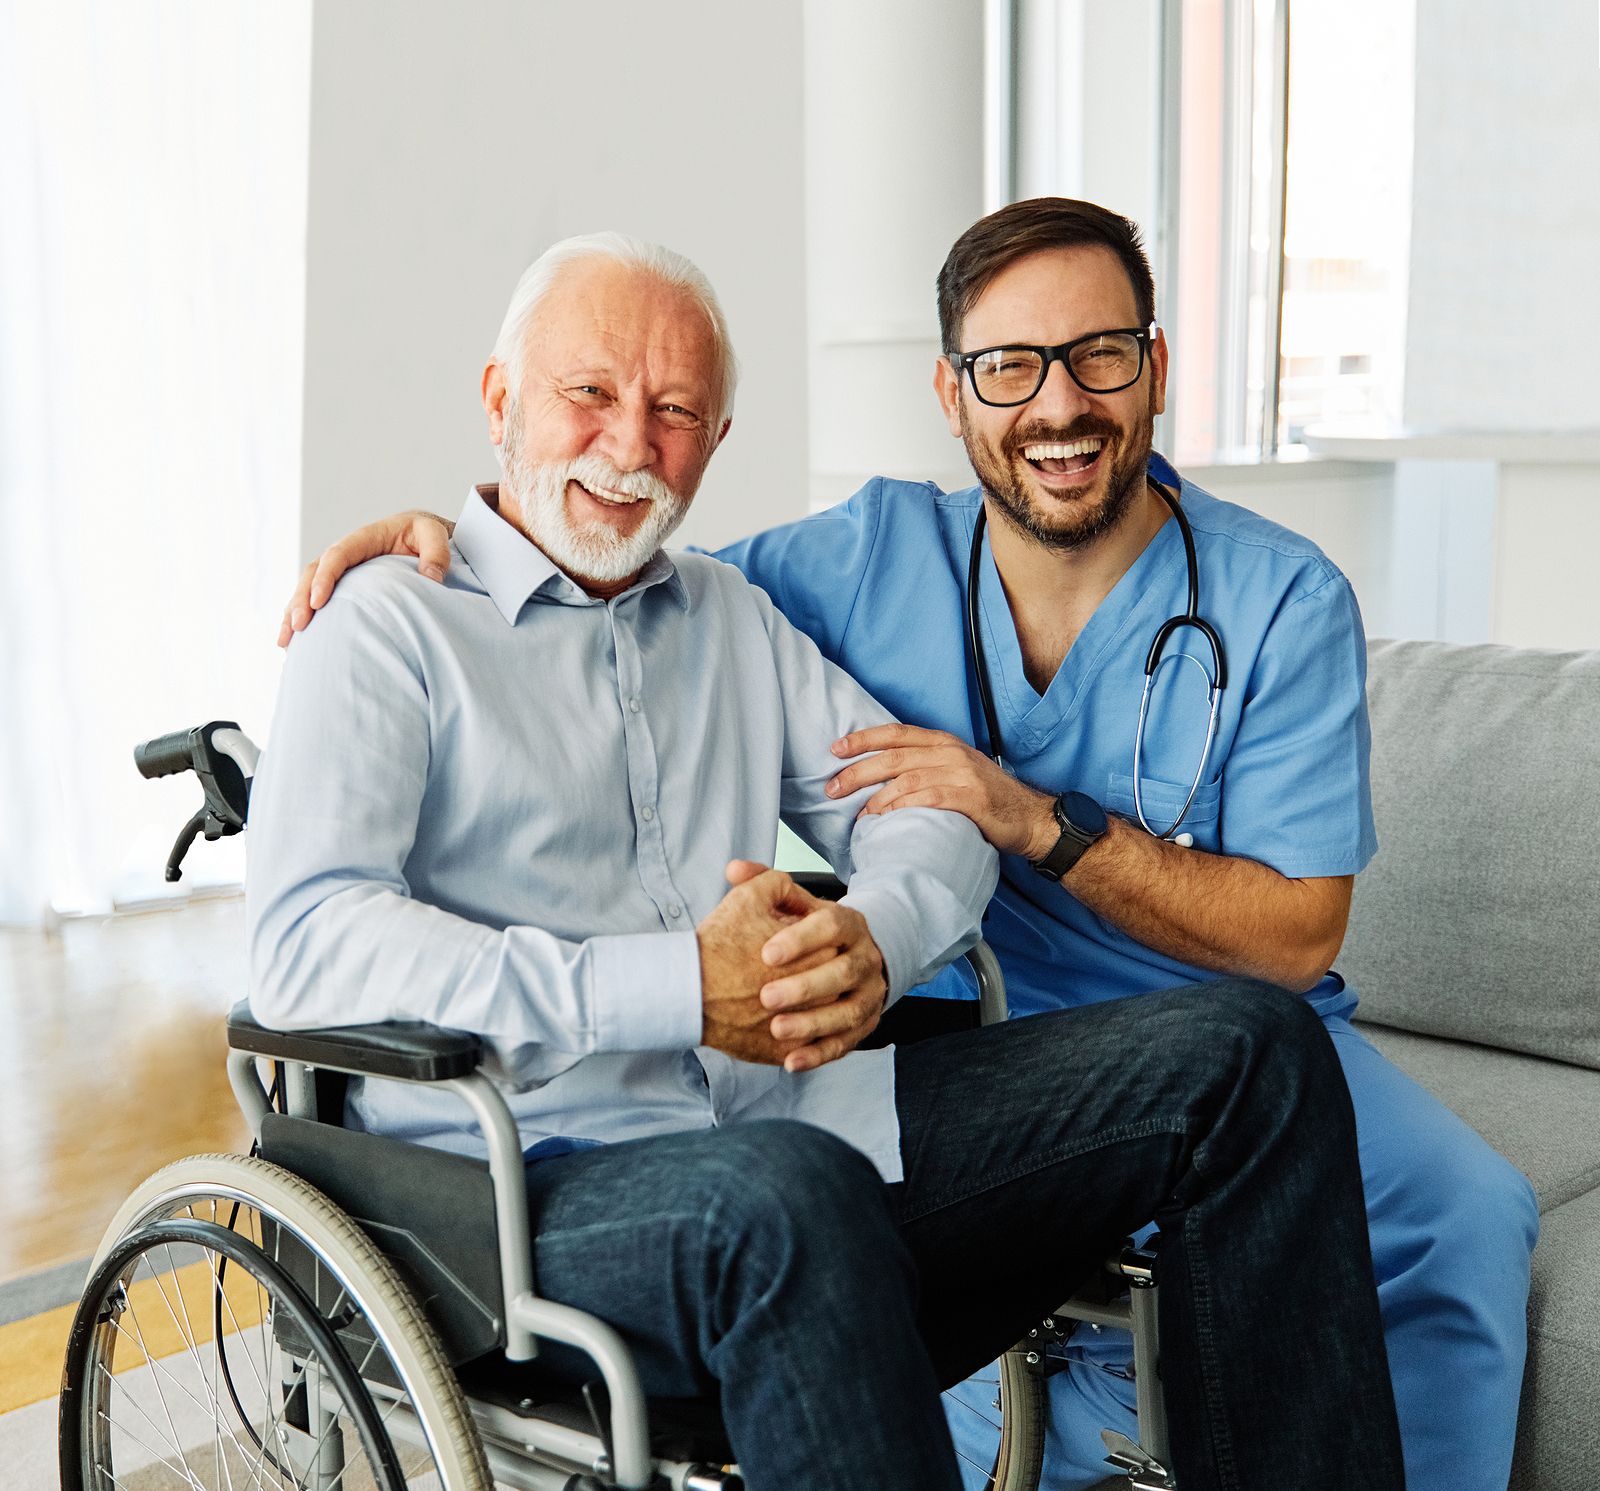 DKV te permite contratar un seguro de salud hasta los 75 años